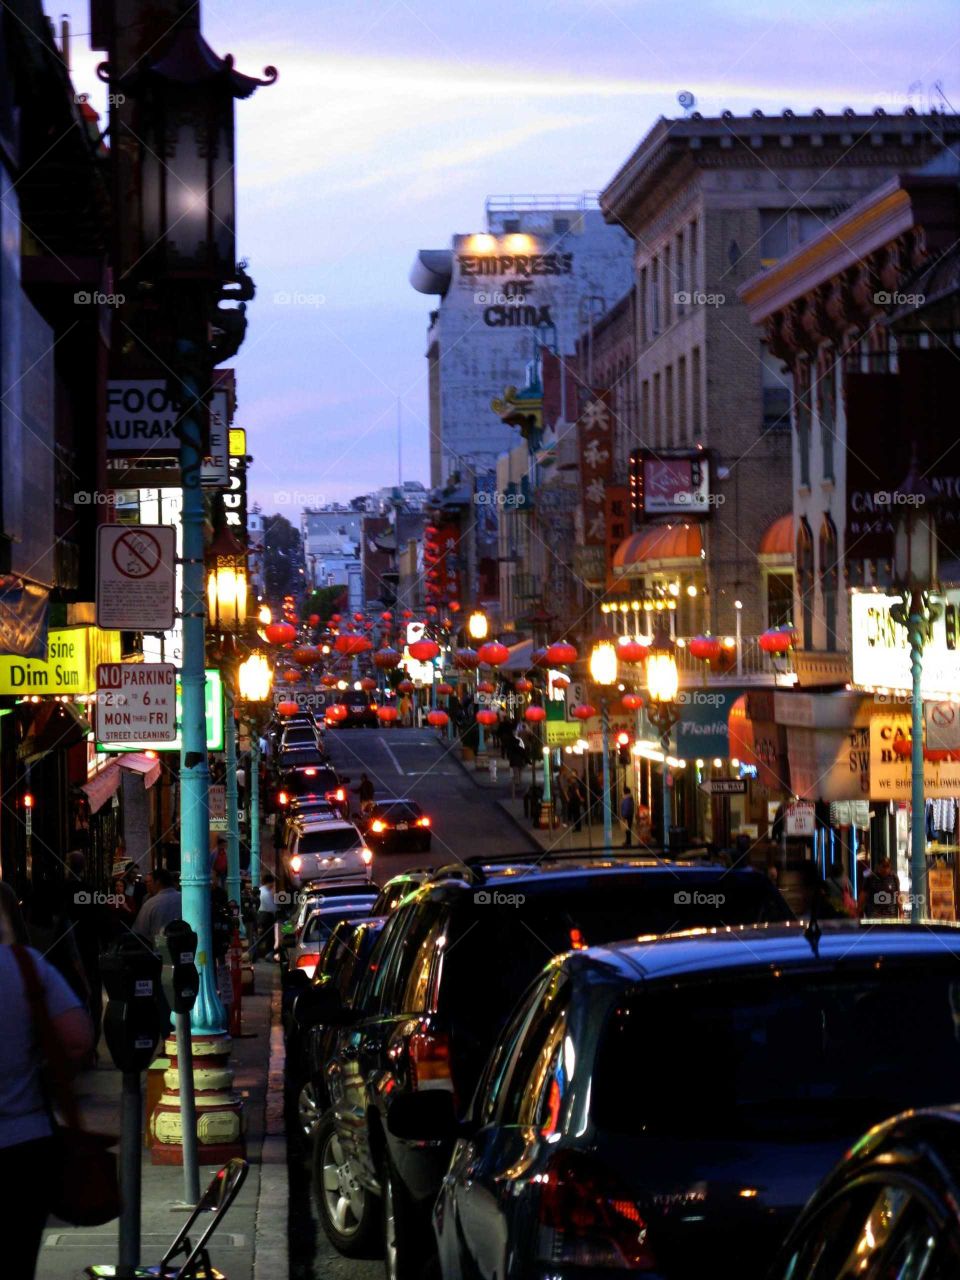 Chinatown, San Francisco at dusk.